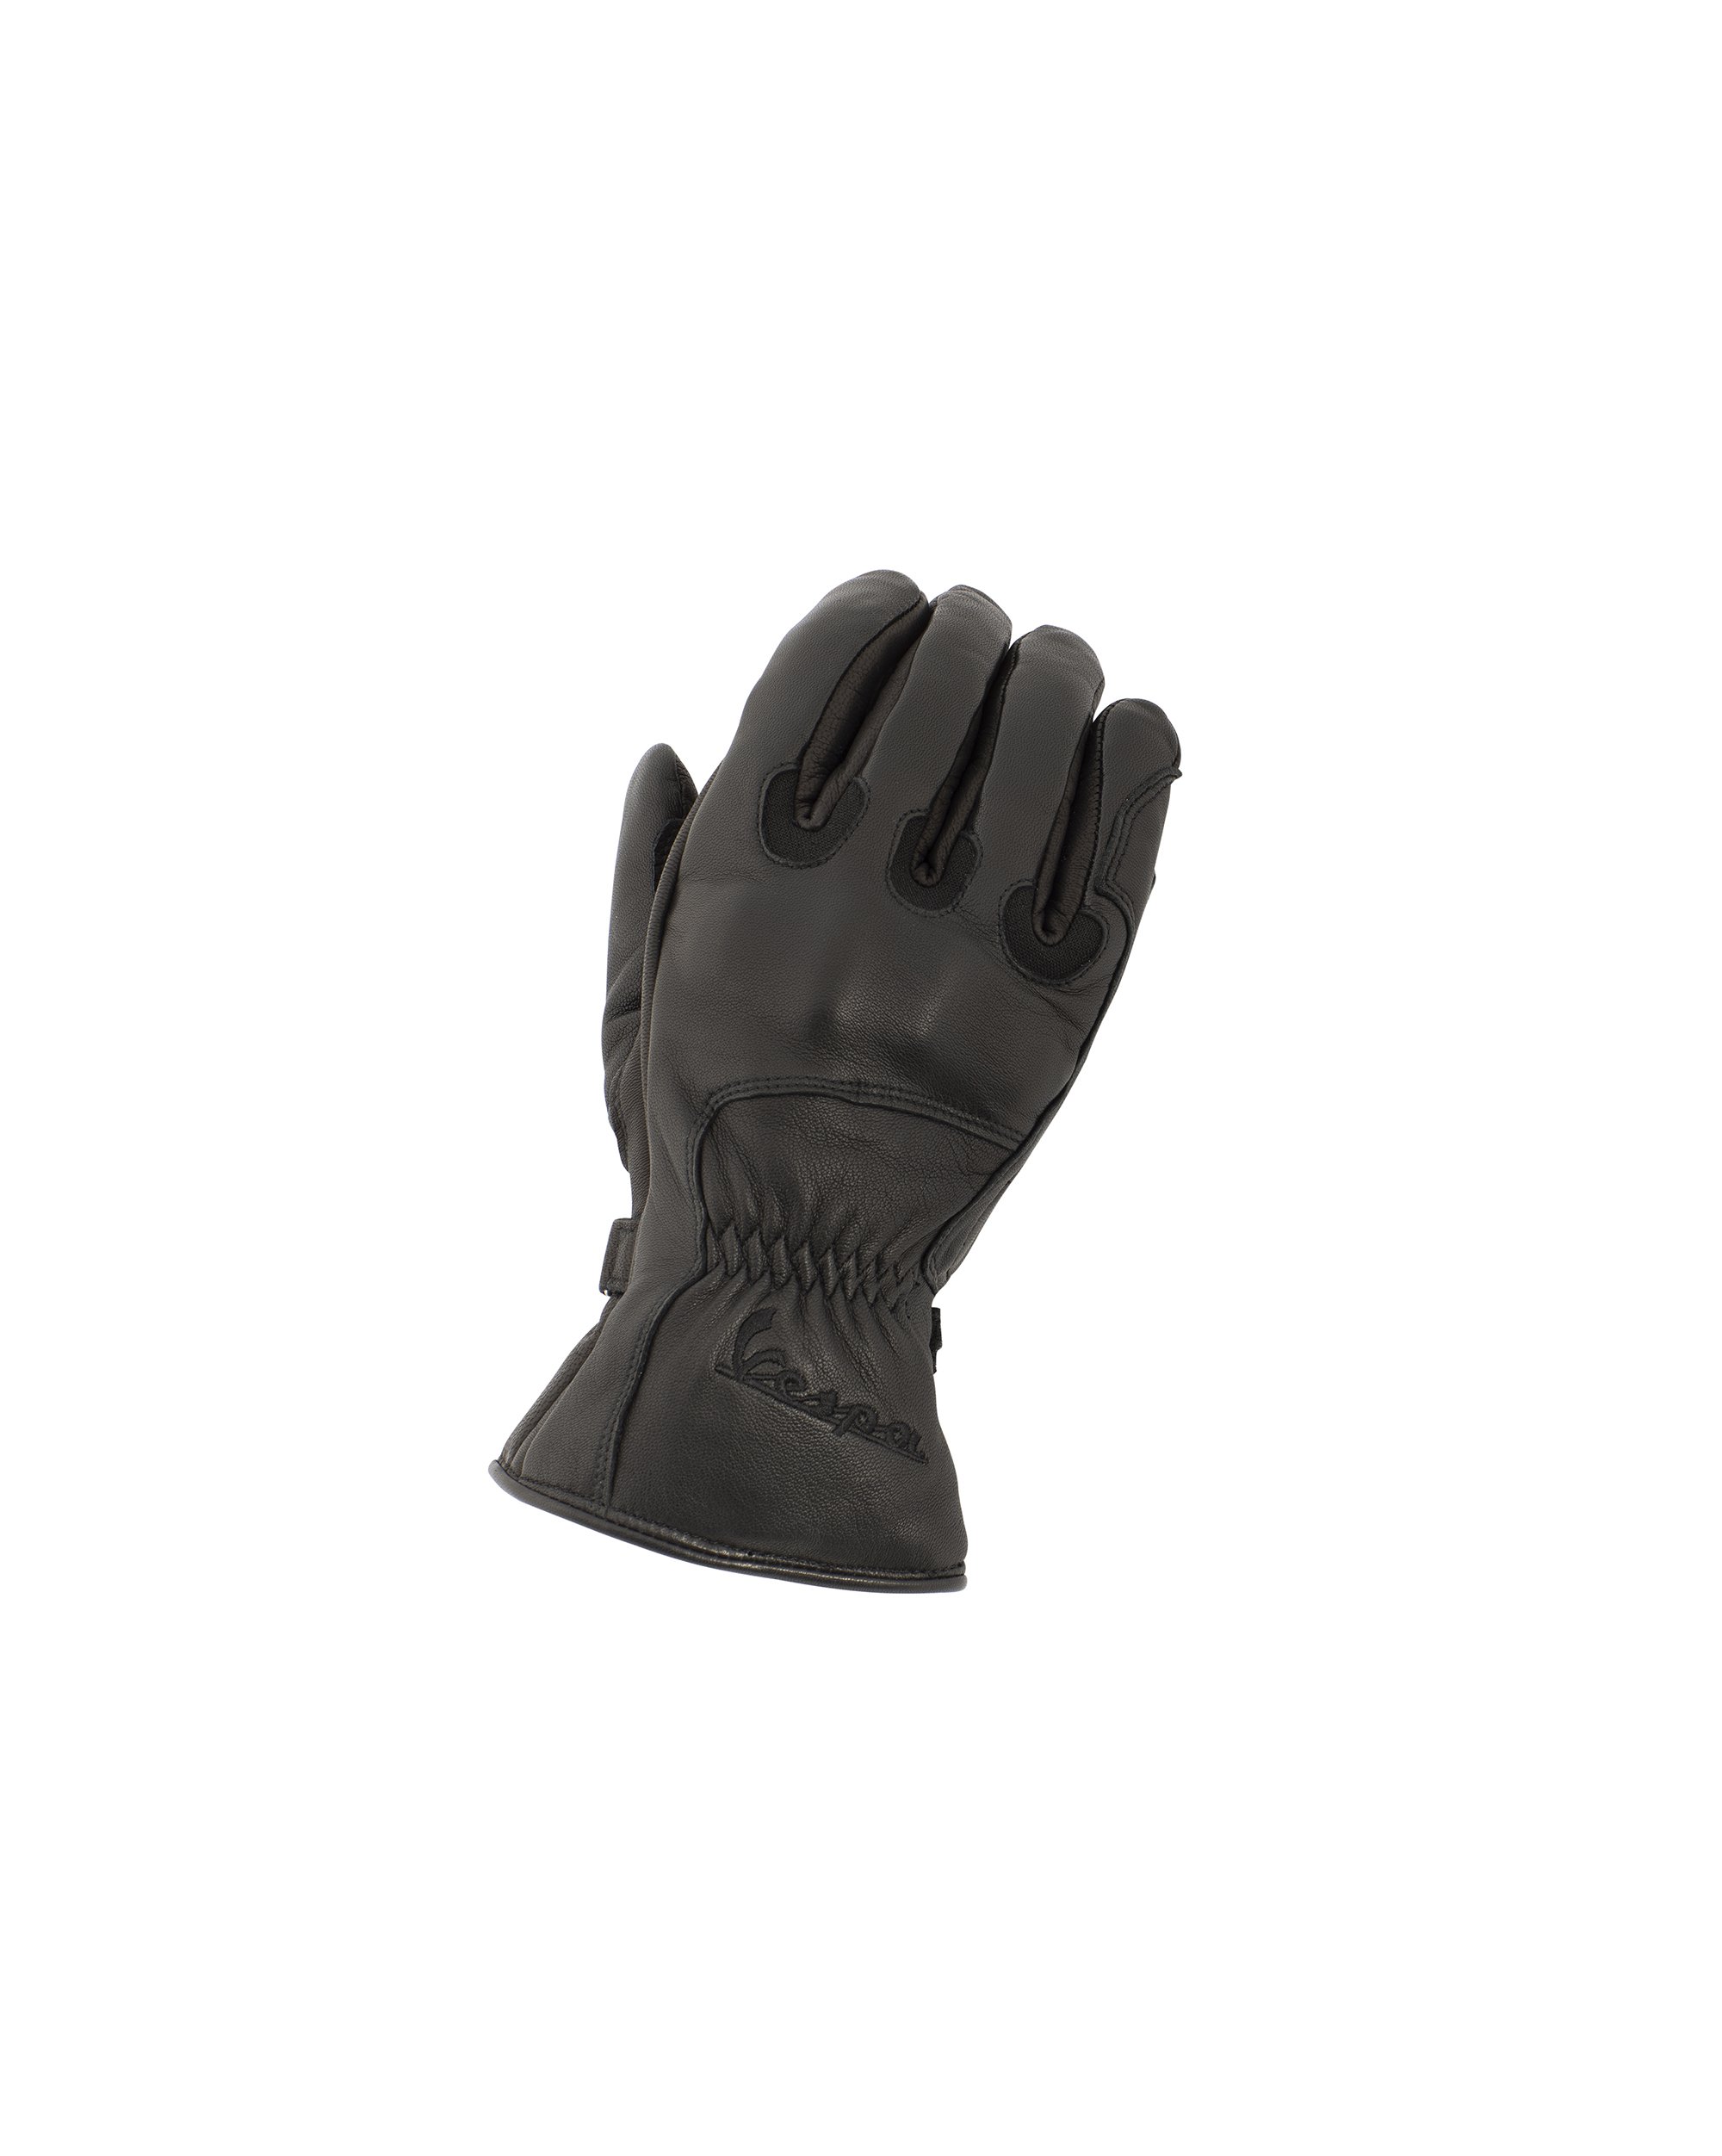 Groot universum Reden storting Vespa 3/4 Winterhandschoenen Leder zwart | Handschoenen | Kleding | Piaggio- Vespa Online Shop by RWN